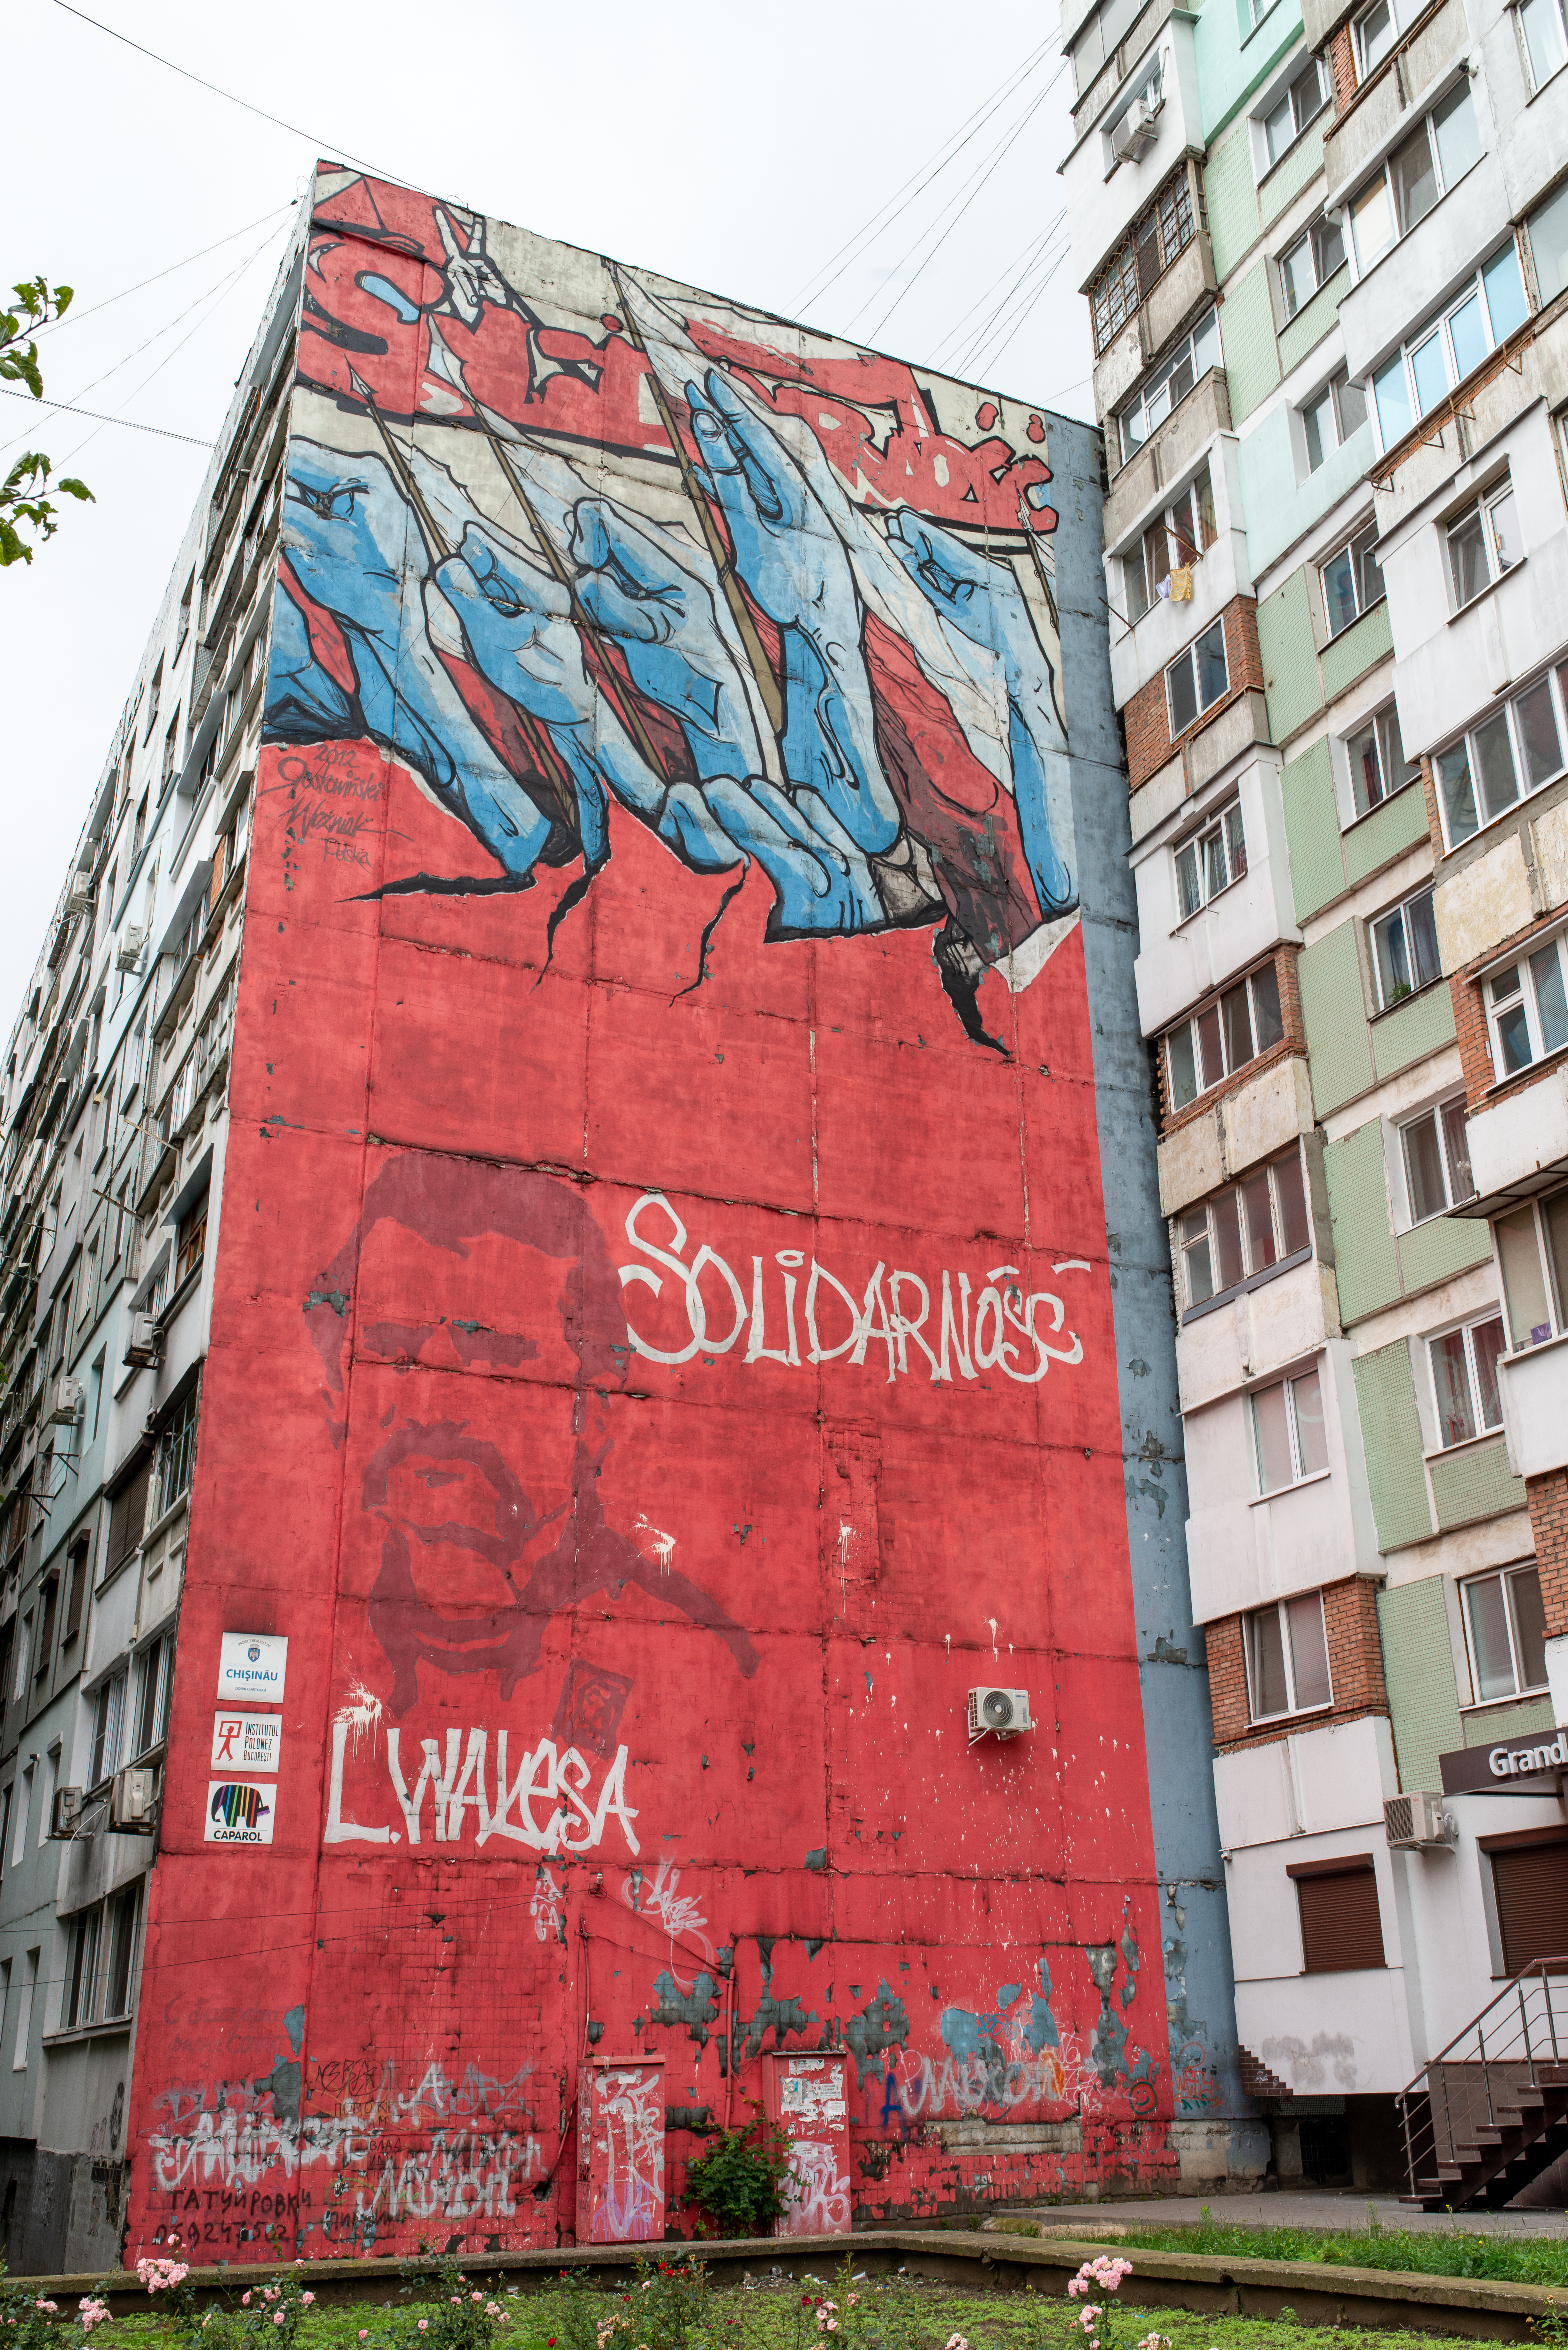 Solidarność Polen und Porträt von Lech Wałęsa, Graffito an einer Hauswand in Chișinău